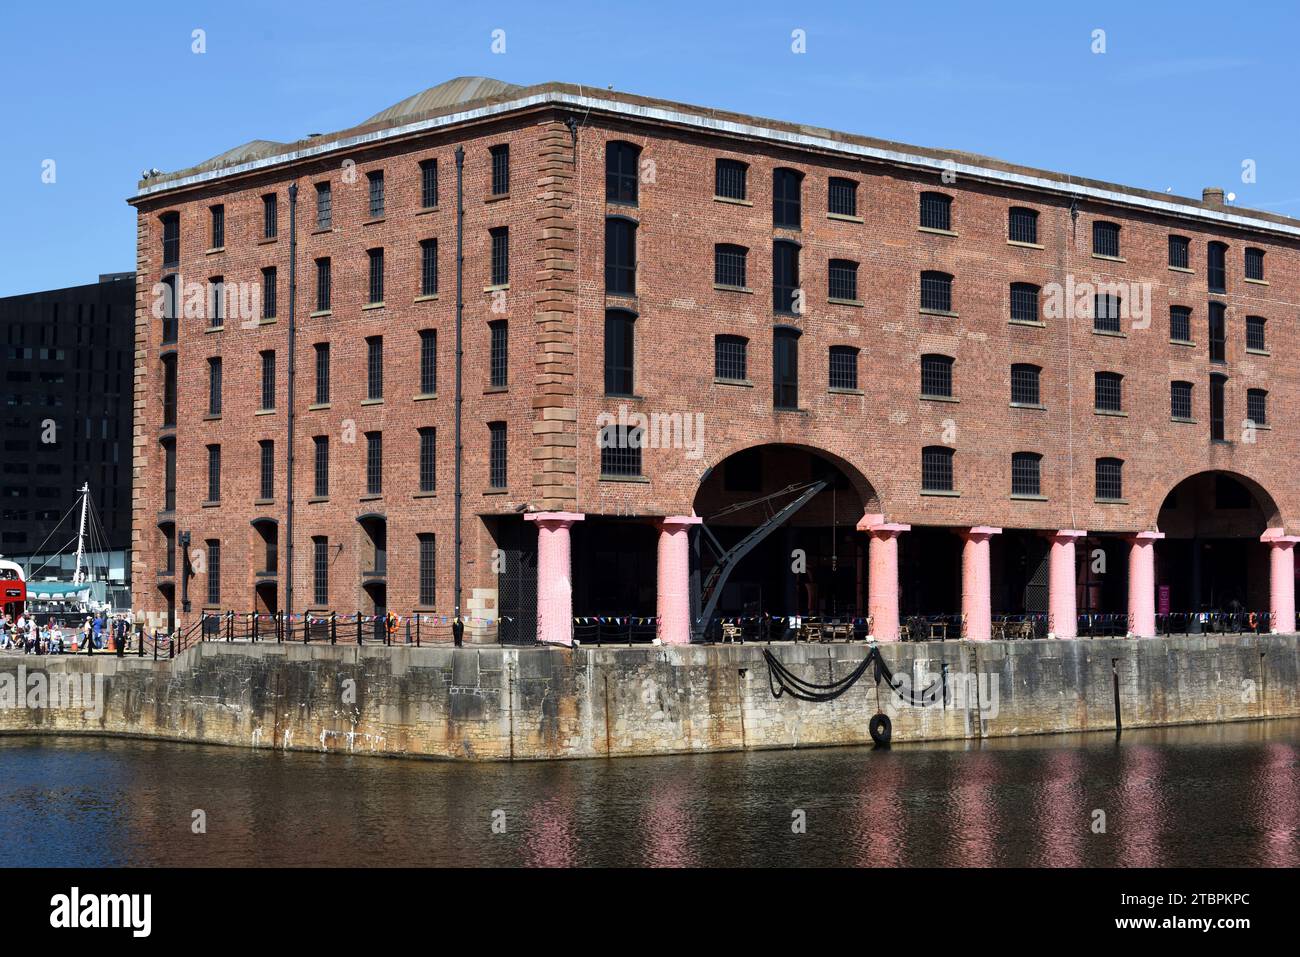 Royal Albert Dock (1846) bâtiments et entrepôts historiques conçus par Jesse Hartley & Philip Hardwick sur Pier Head Liverpool Angleterre Royaume-Uni Banque D'Images